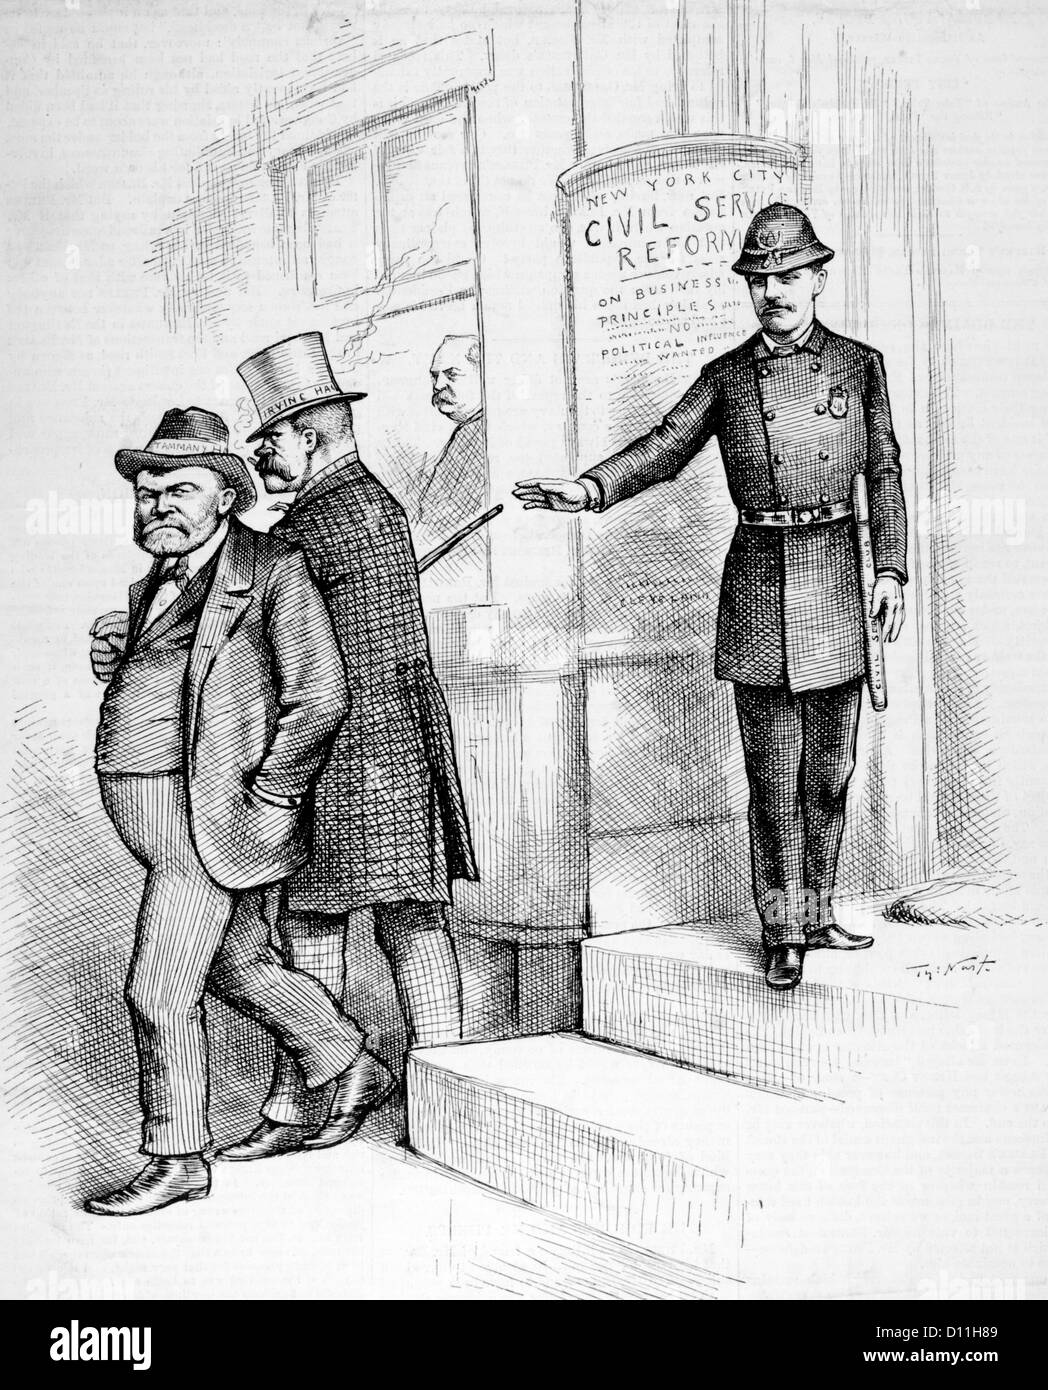 1880 1884 Thomas Nast caricatura Teddy Roosevelt como el policía se apodera de TAMMANY HALL Y REFUERZOS DE IRVING HALL NYC LA REFORMA DEL SERVICIO CIVIL Foto de stock